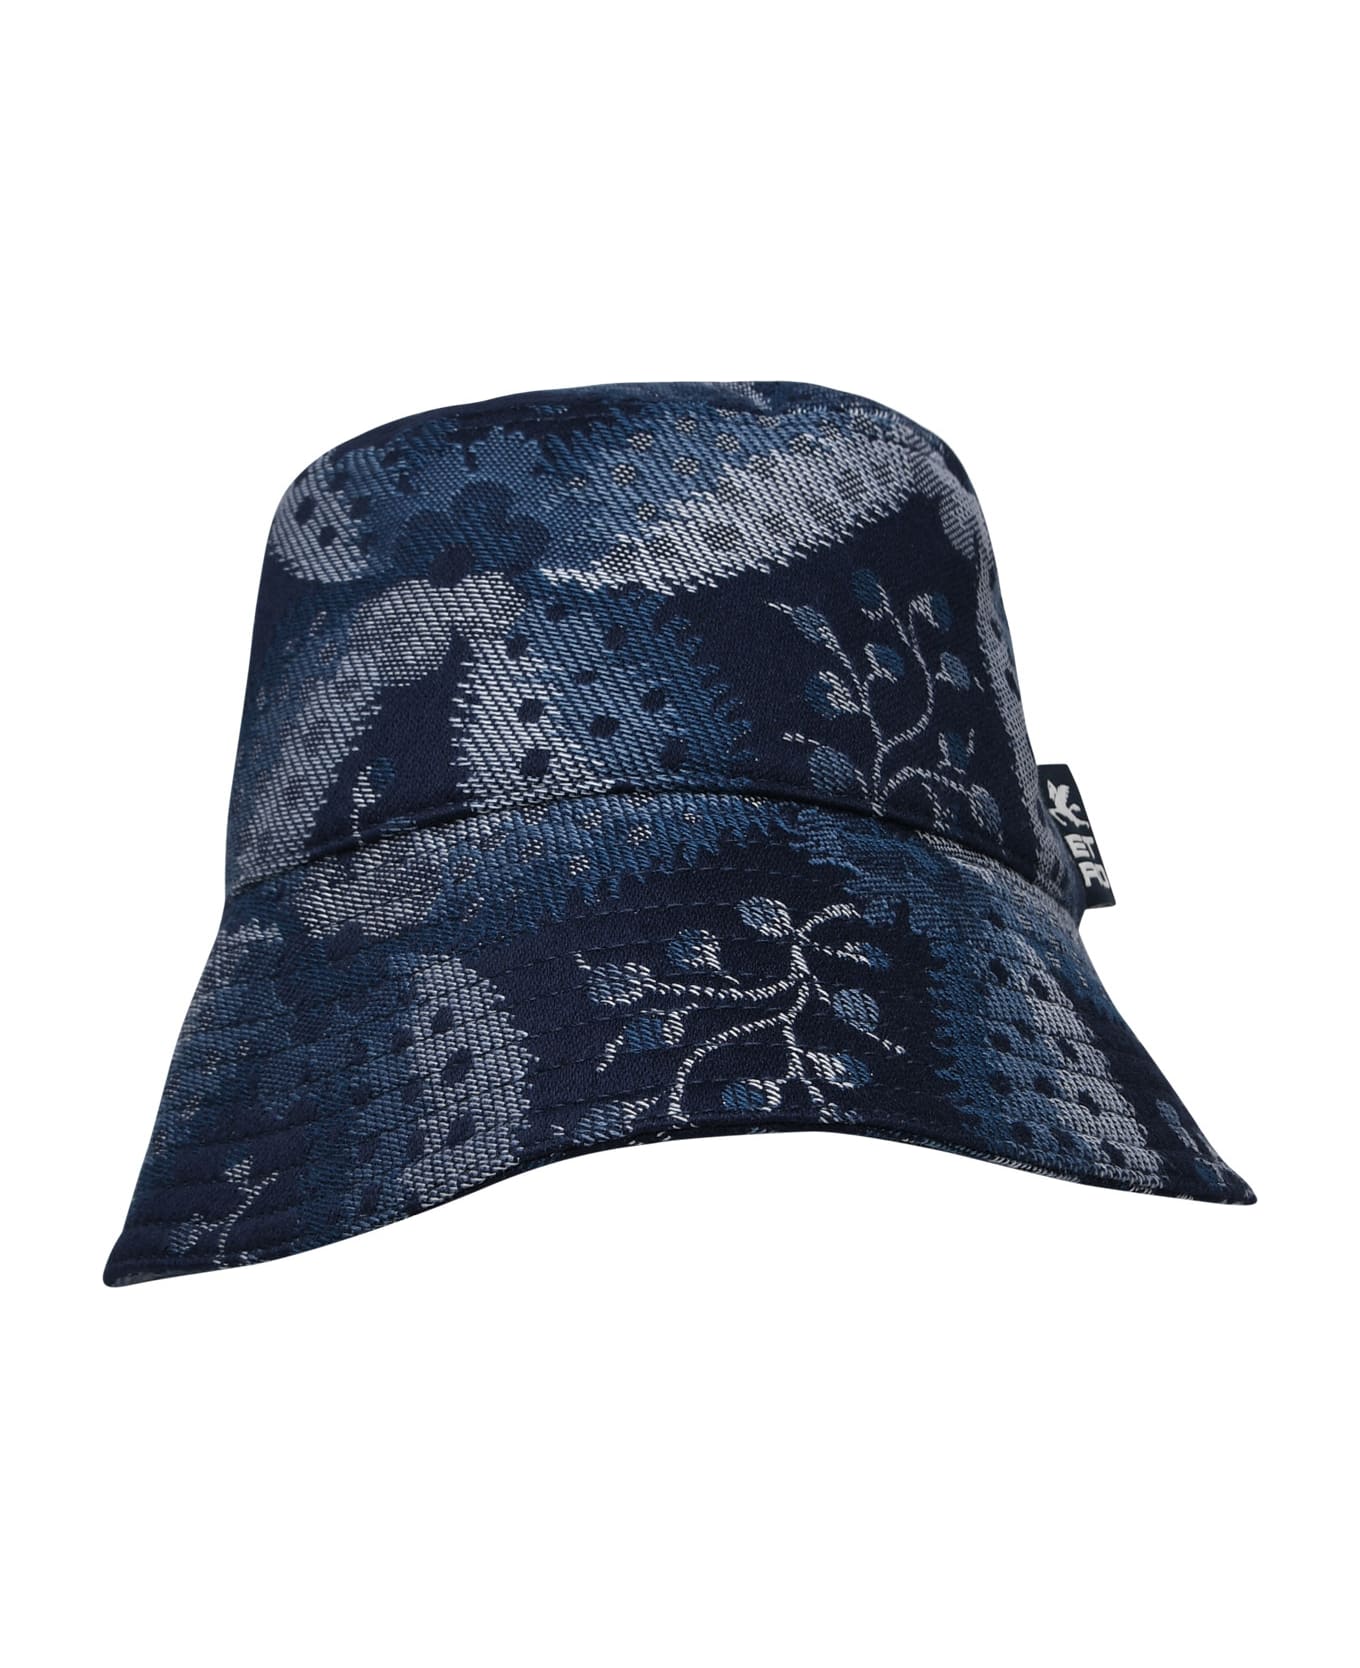 Etro Blue Cotton Blend Hat - Blue 帽子